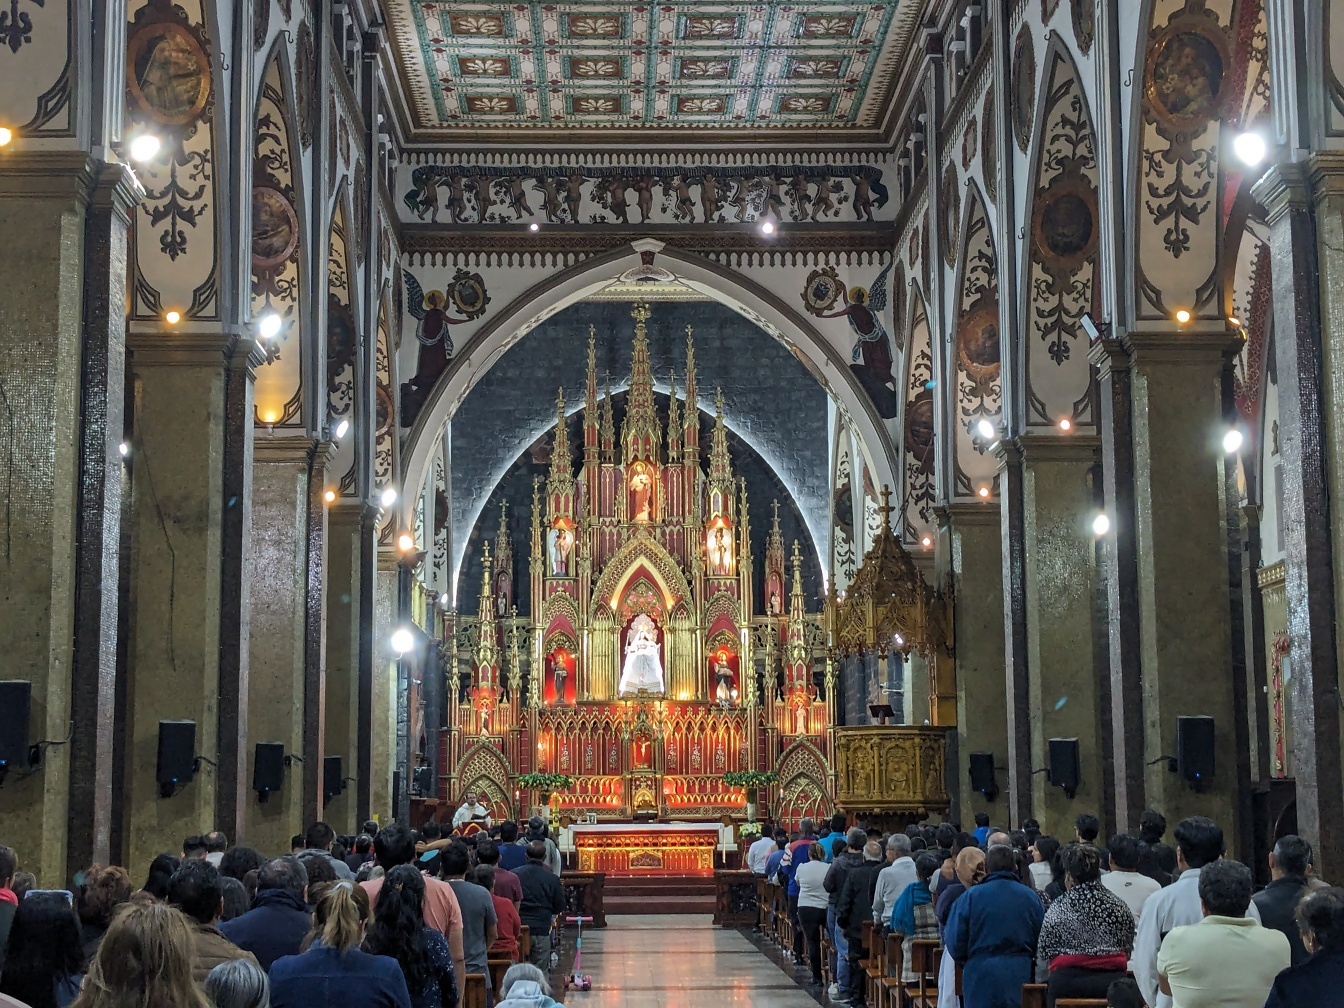 Người dân trong một nhà thờ của Đức Trinh Nữ Nước Thánh, một vương cung thánh đường Công giáo La Mã nổi tiếng và tráng lệ ở Baños de Agua Santa, Ecuador